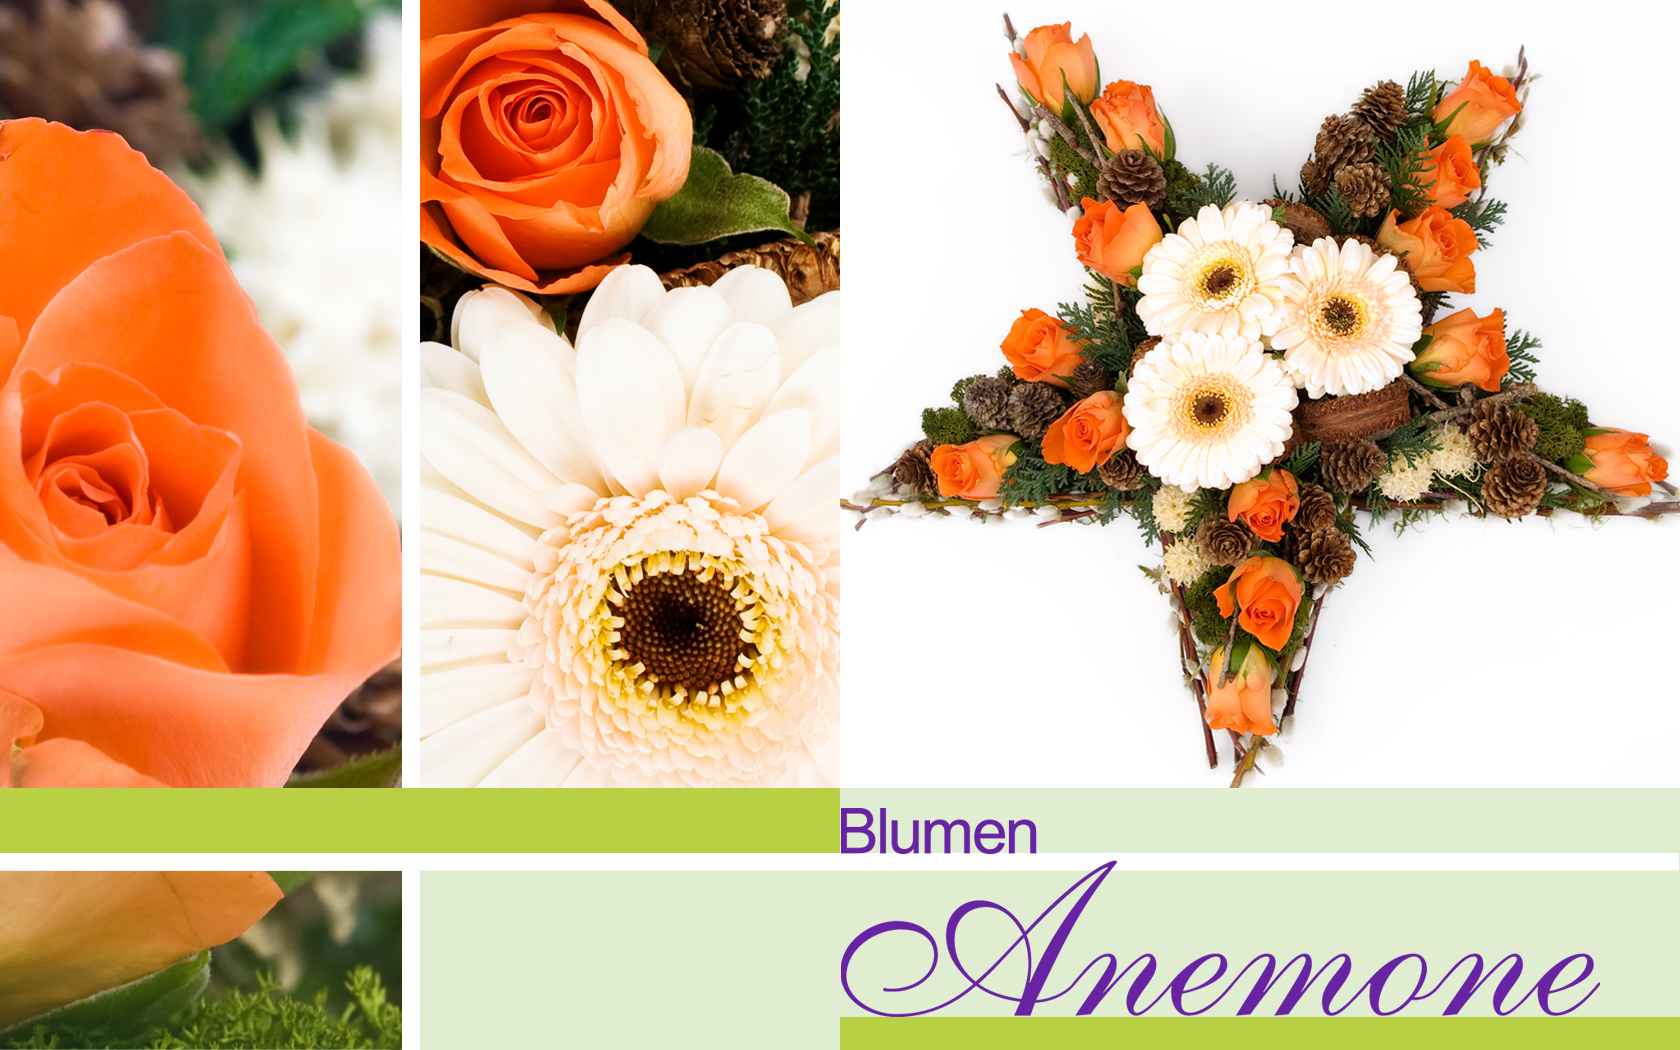 Advents- und weihnachtliche Blumengestecke bei Blumen Anemone in München